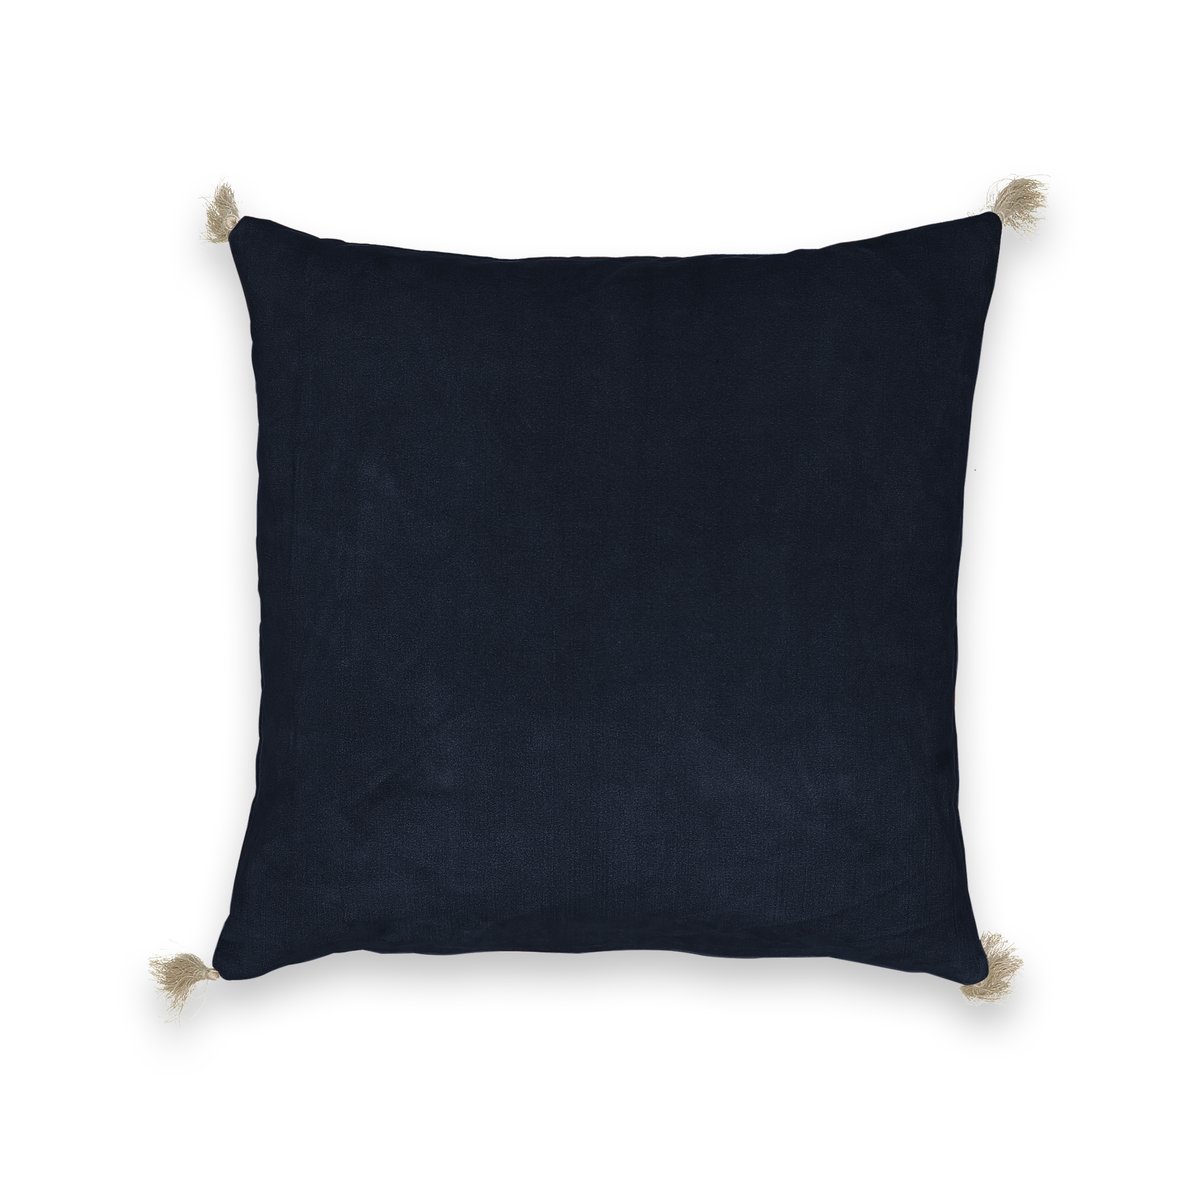 Чехол на подушку велюровый Cacolet 50 x 30 см синий чехол на подушку oscaraz 50 x 30 см бежевый